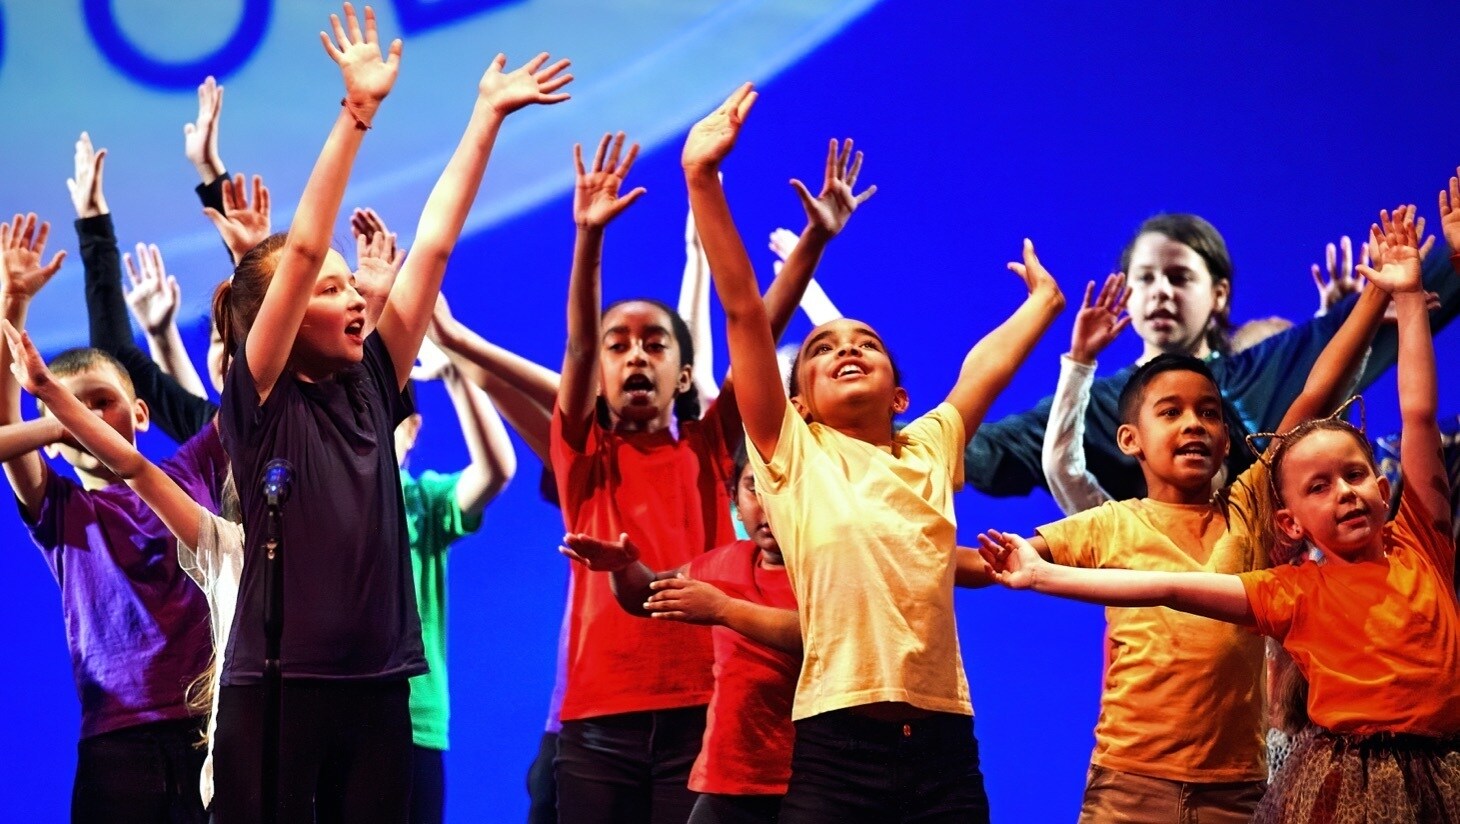 School children performing